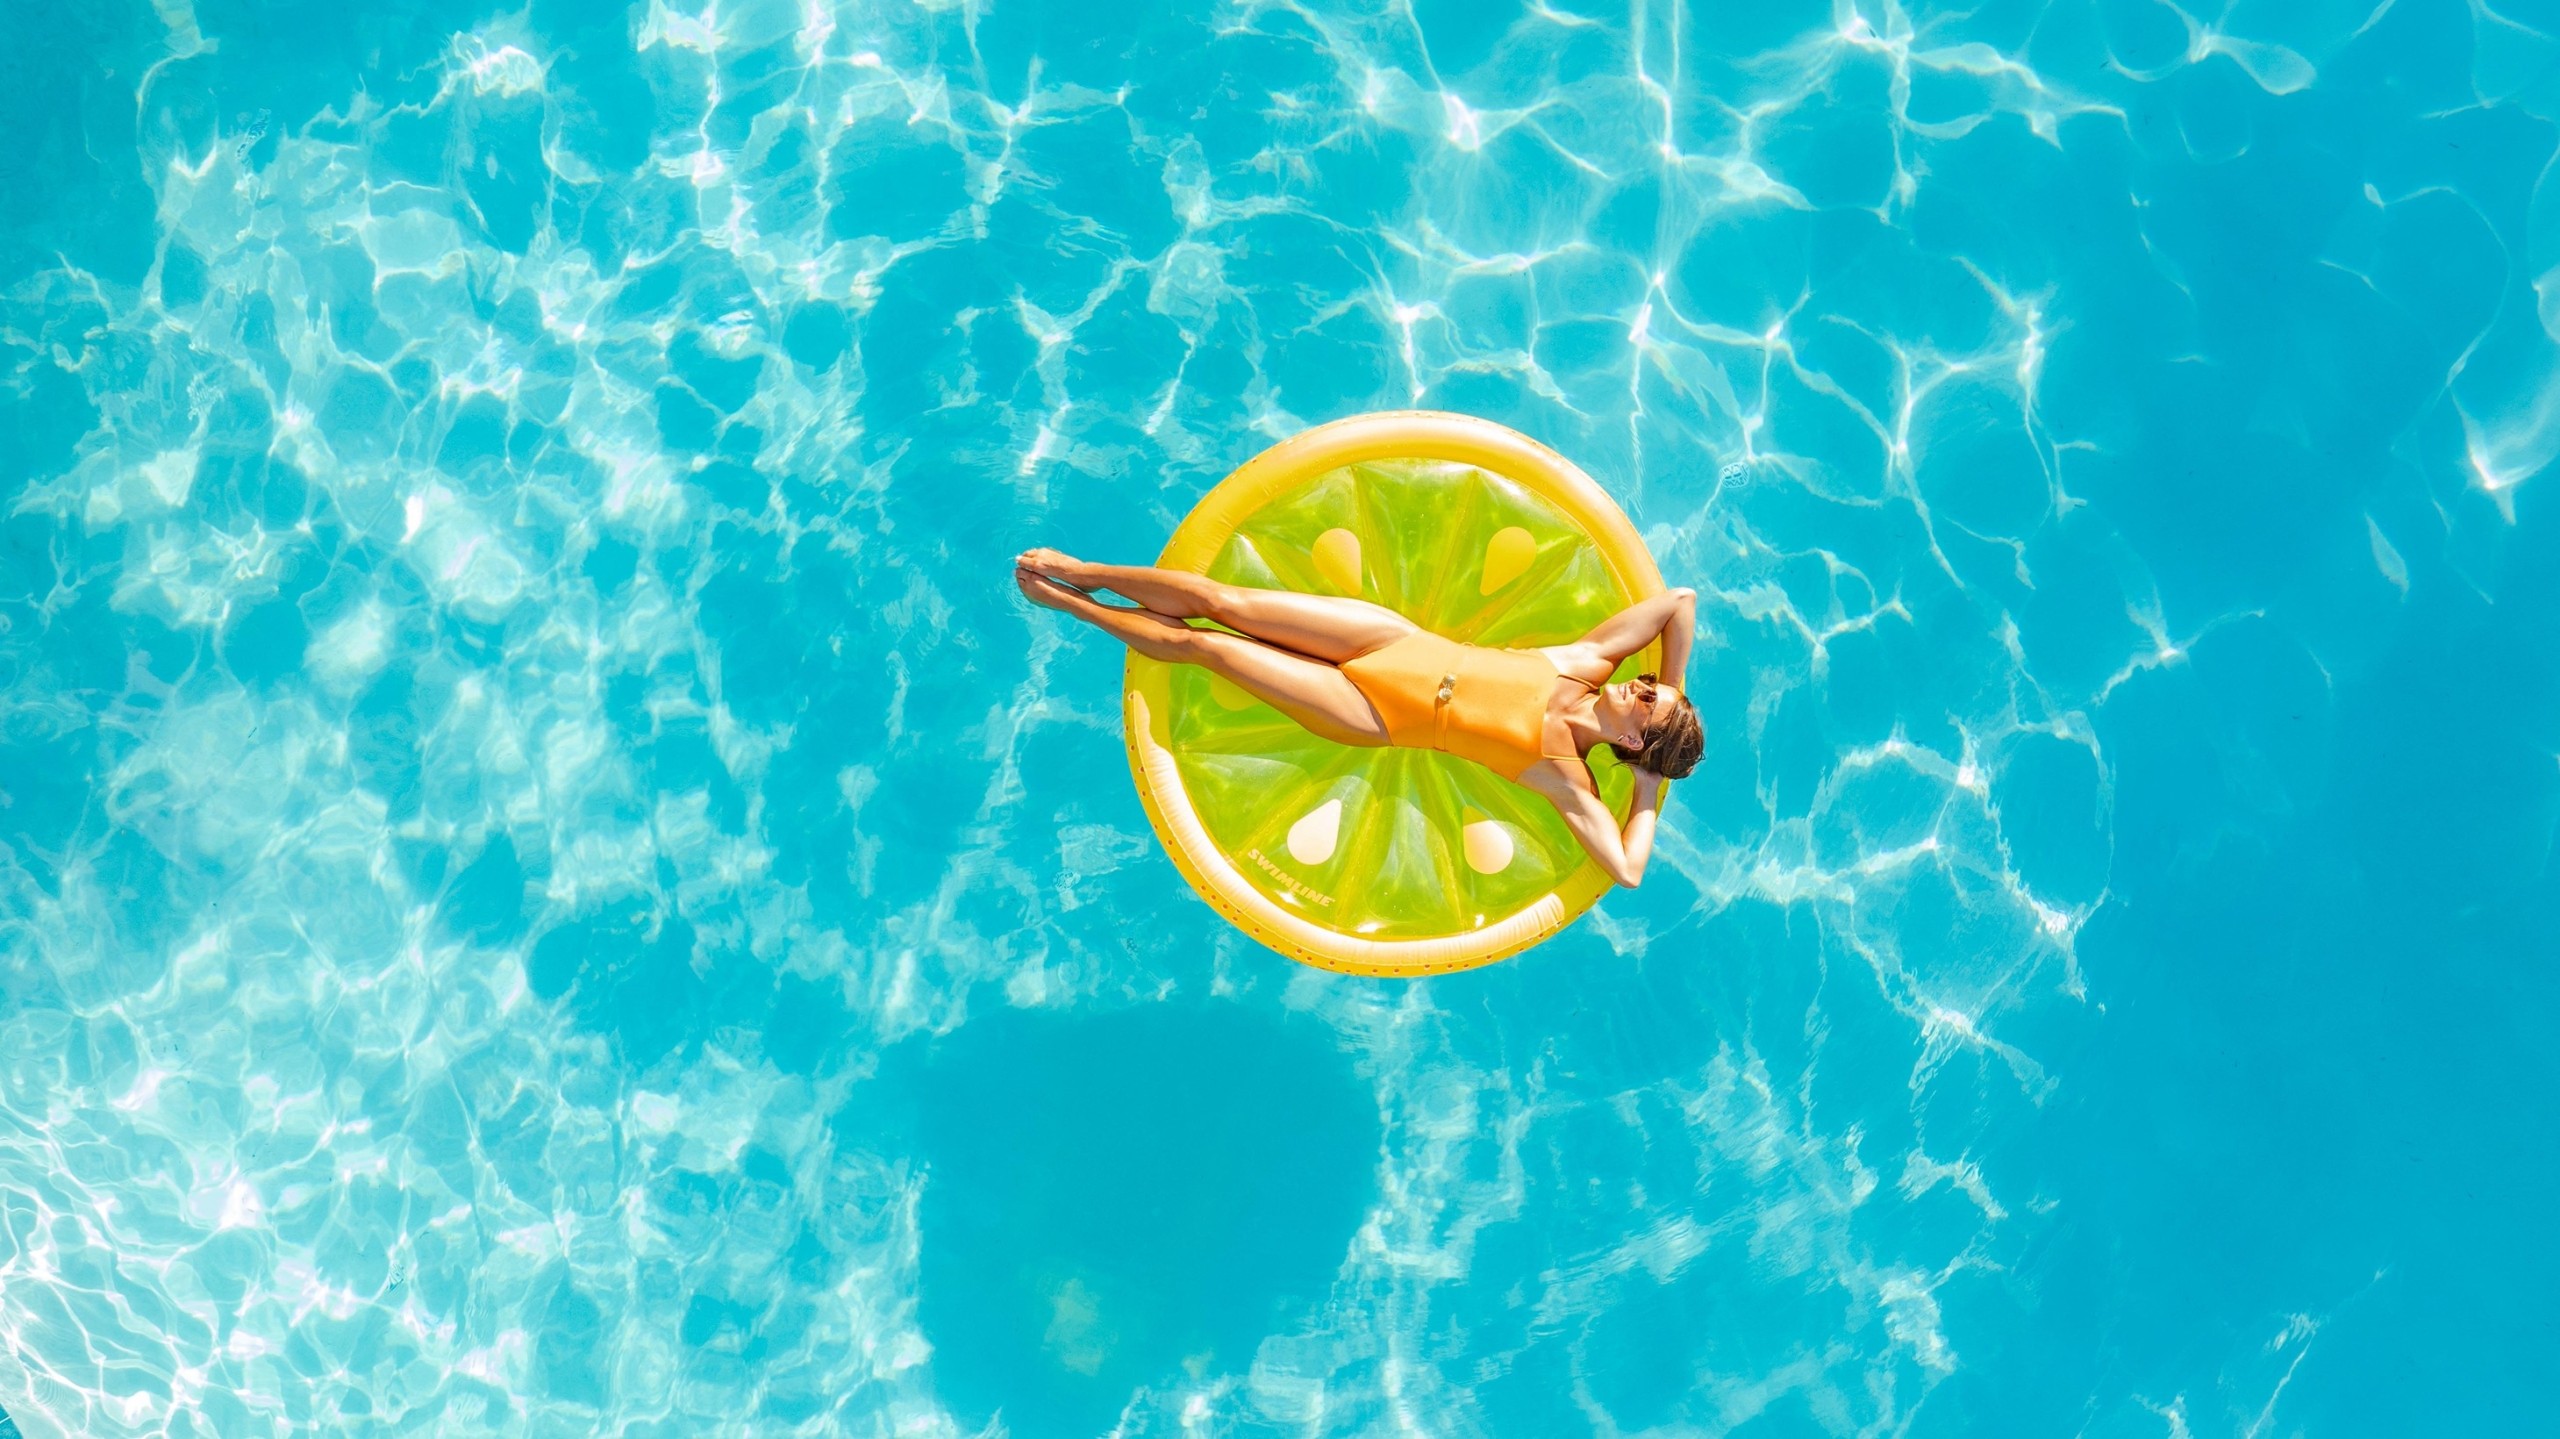 woman floating in a pool on a flotation device shaped like a lemon